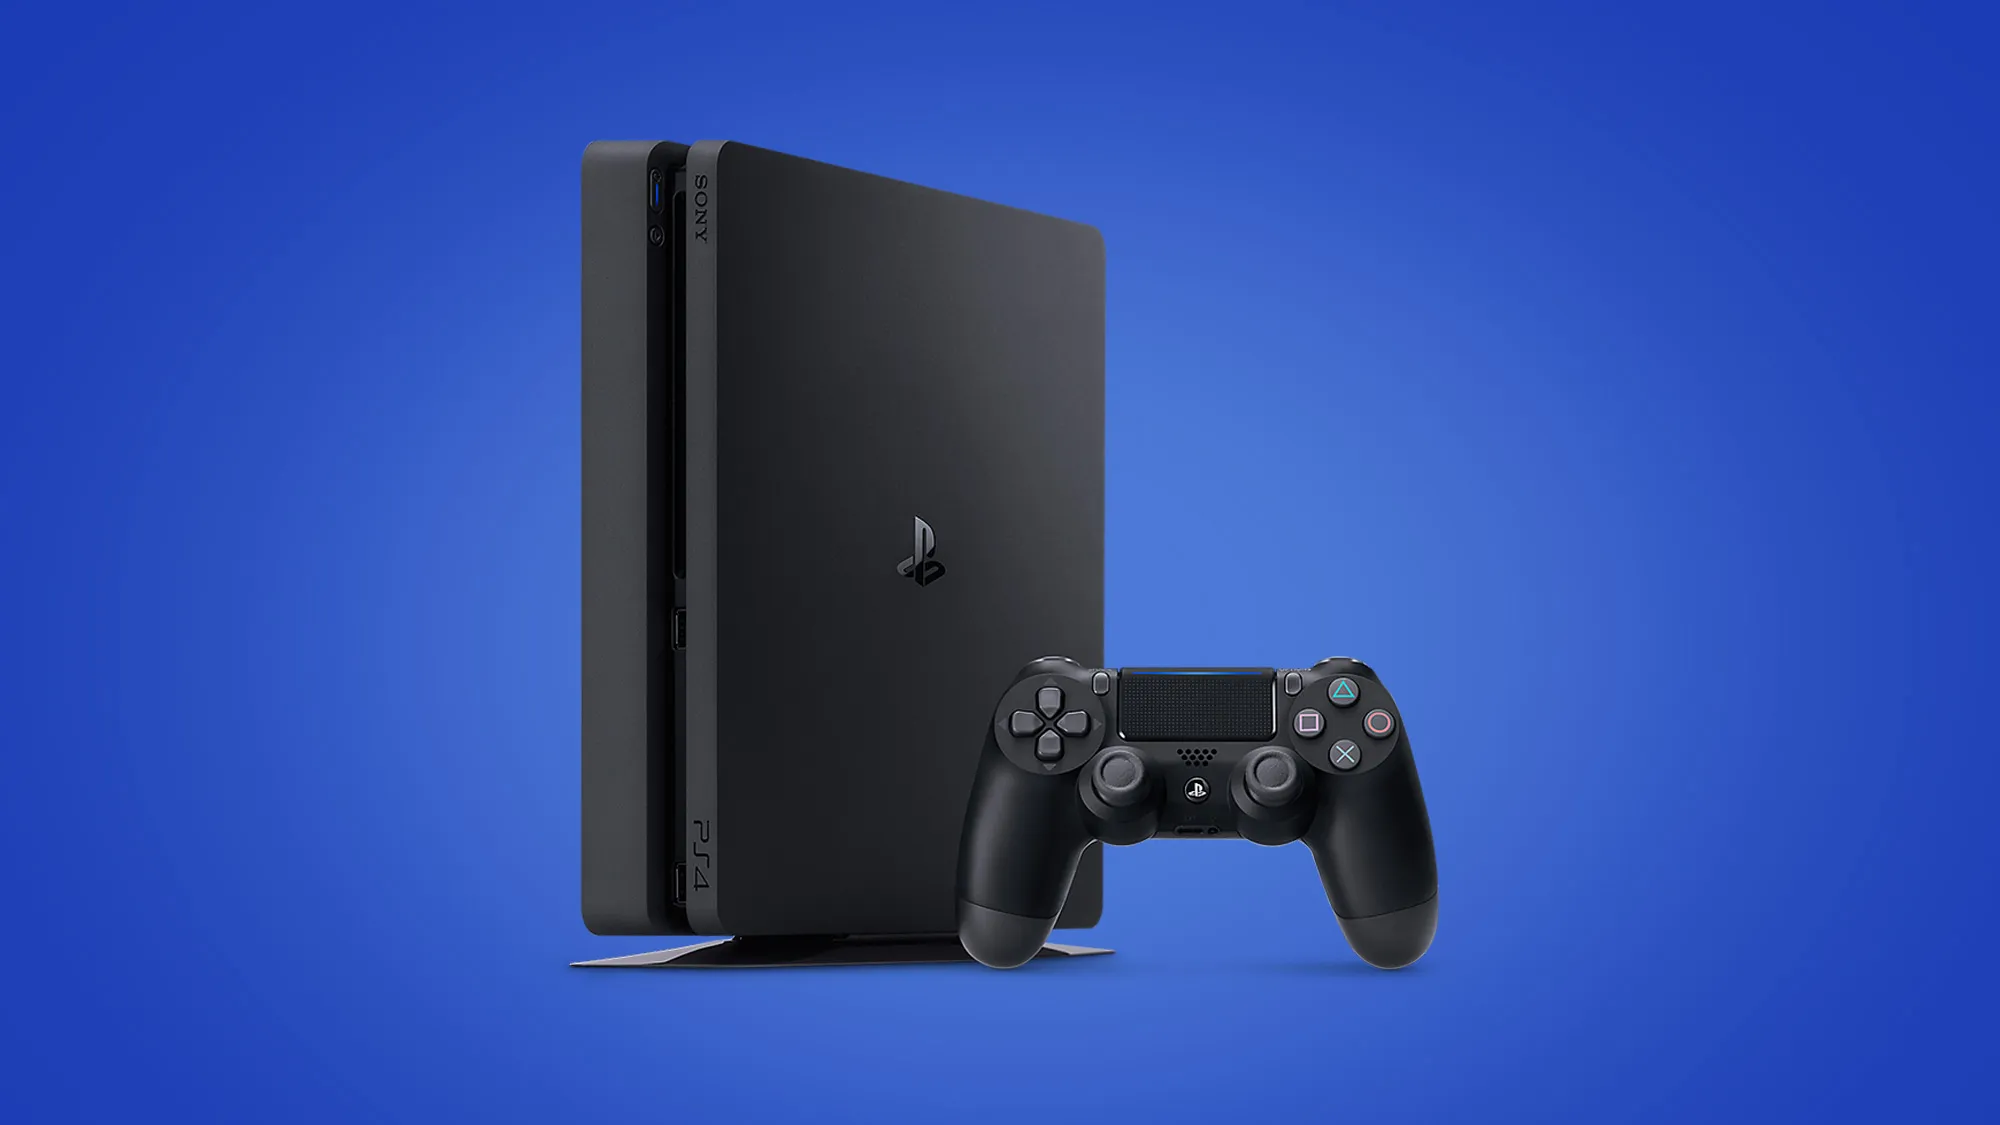 Daftar Harga PS4 Terbaru 2020